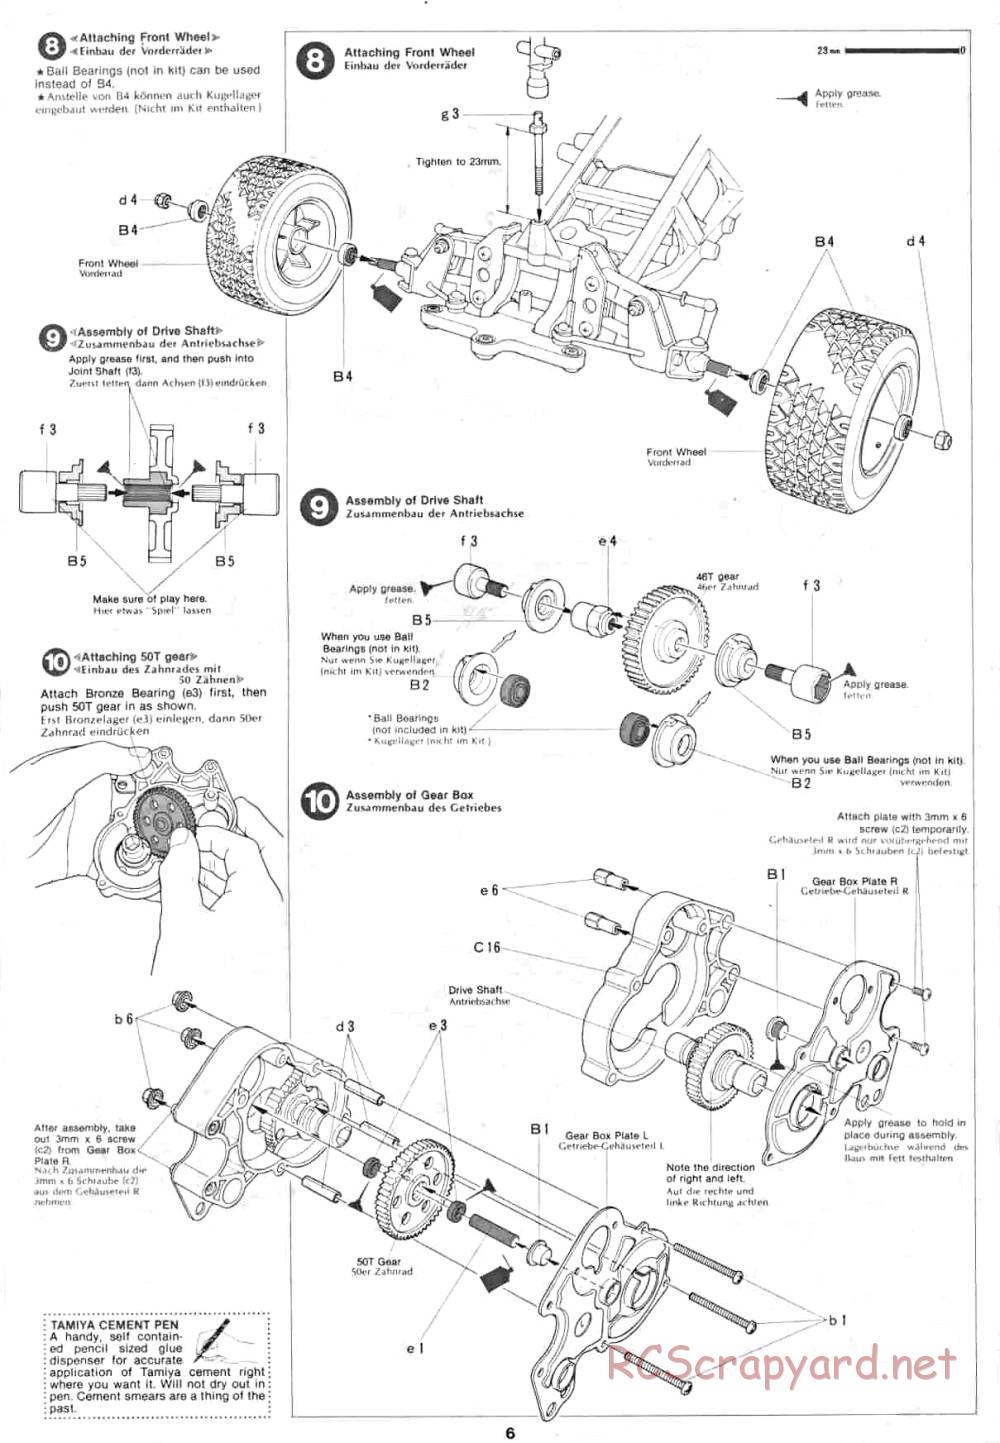 Tamiya - Lancia Rally - 58040 - Manual - Page 6